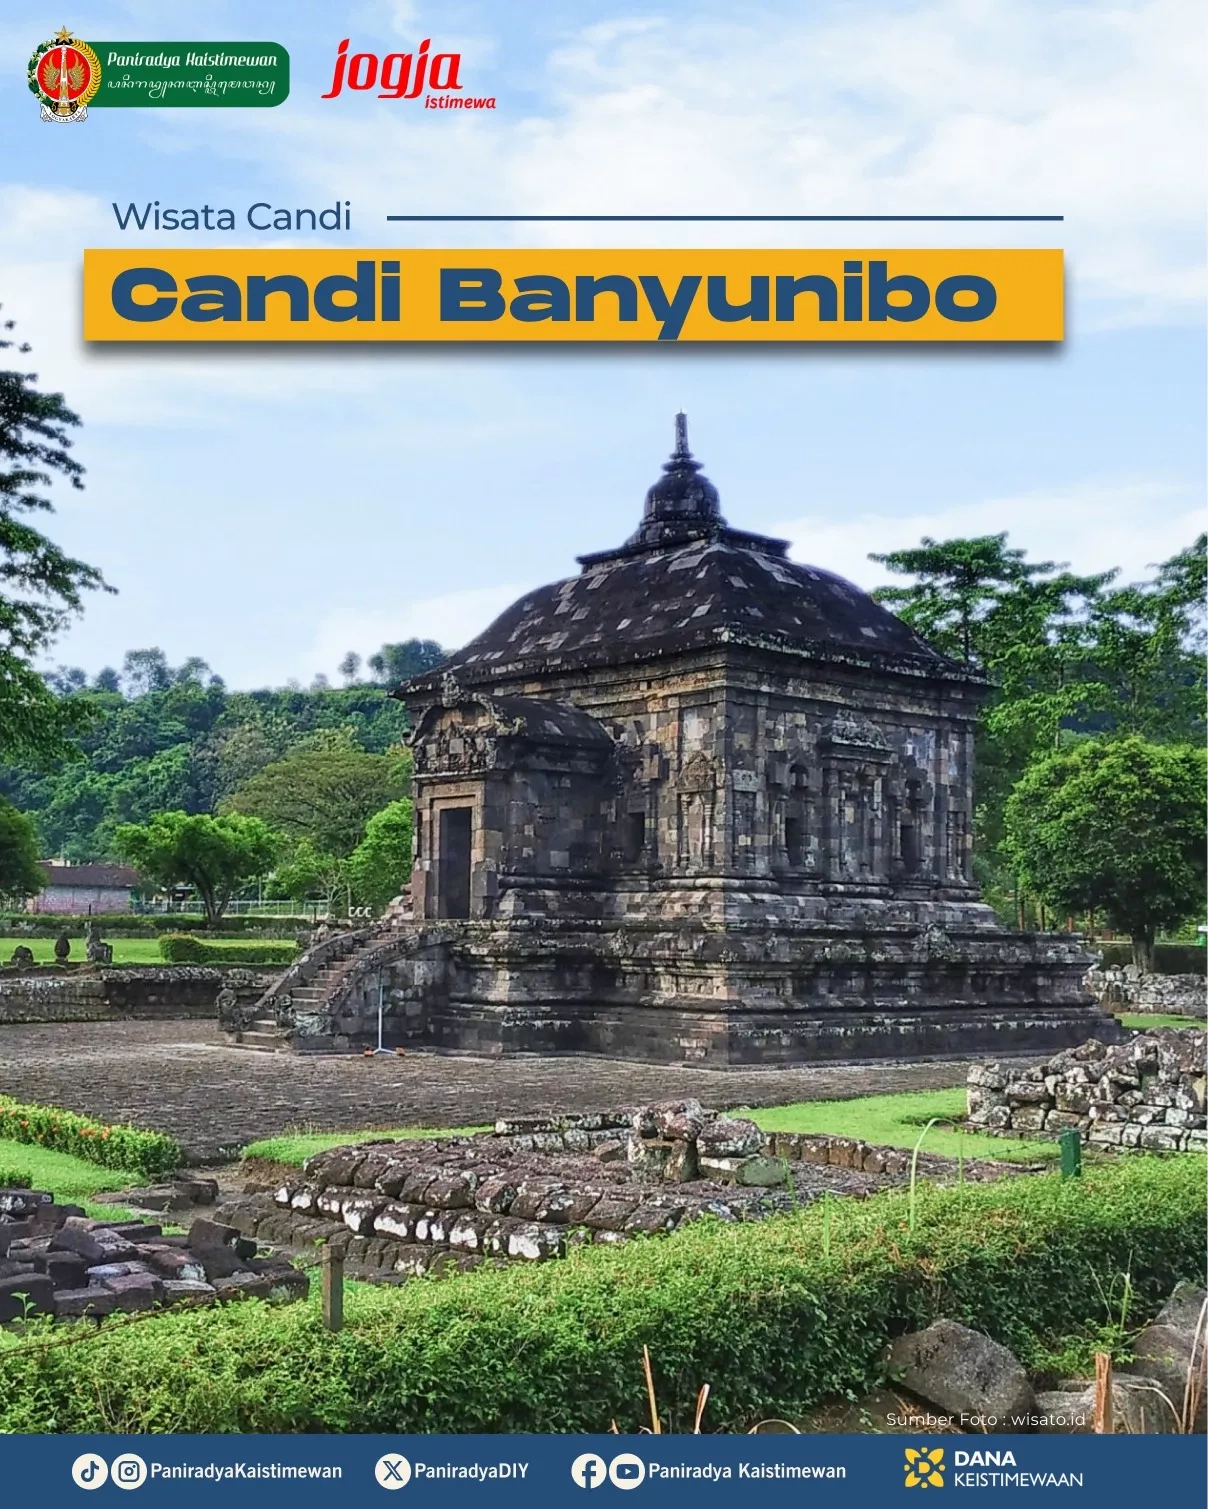 Wisata Candi - Candi Banyunibo